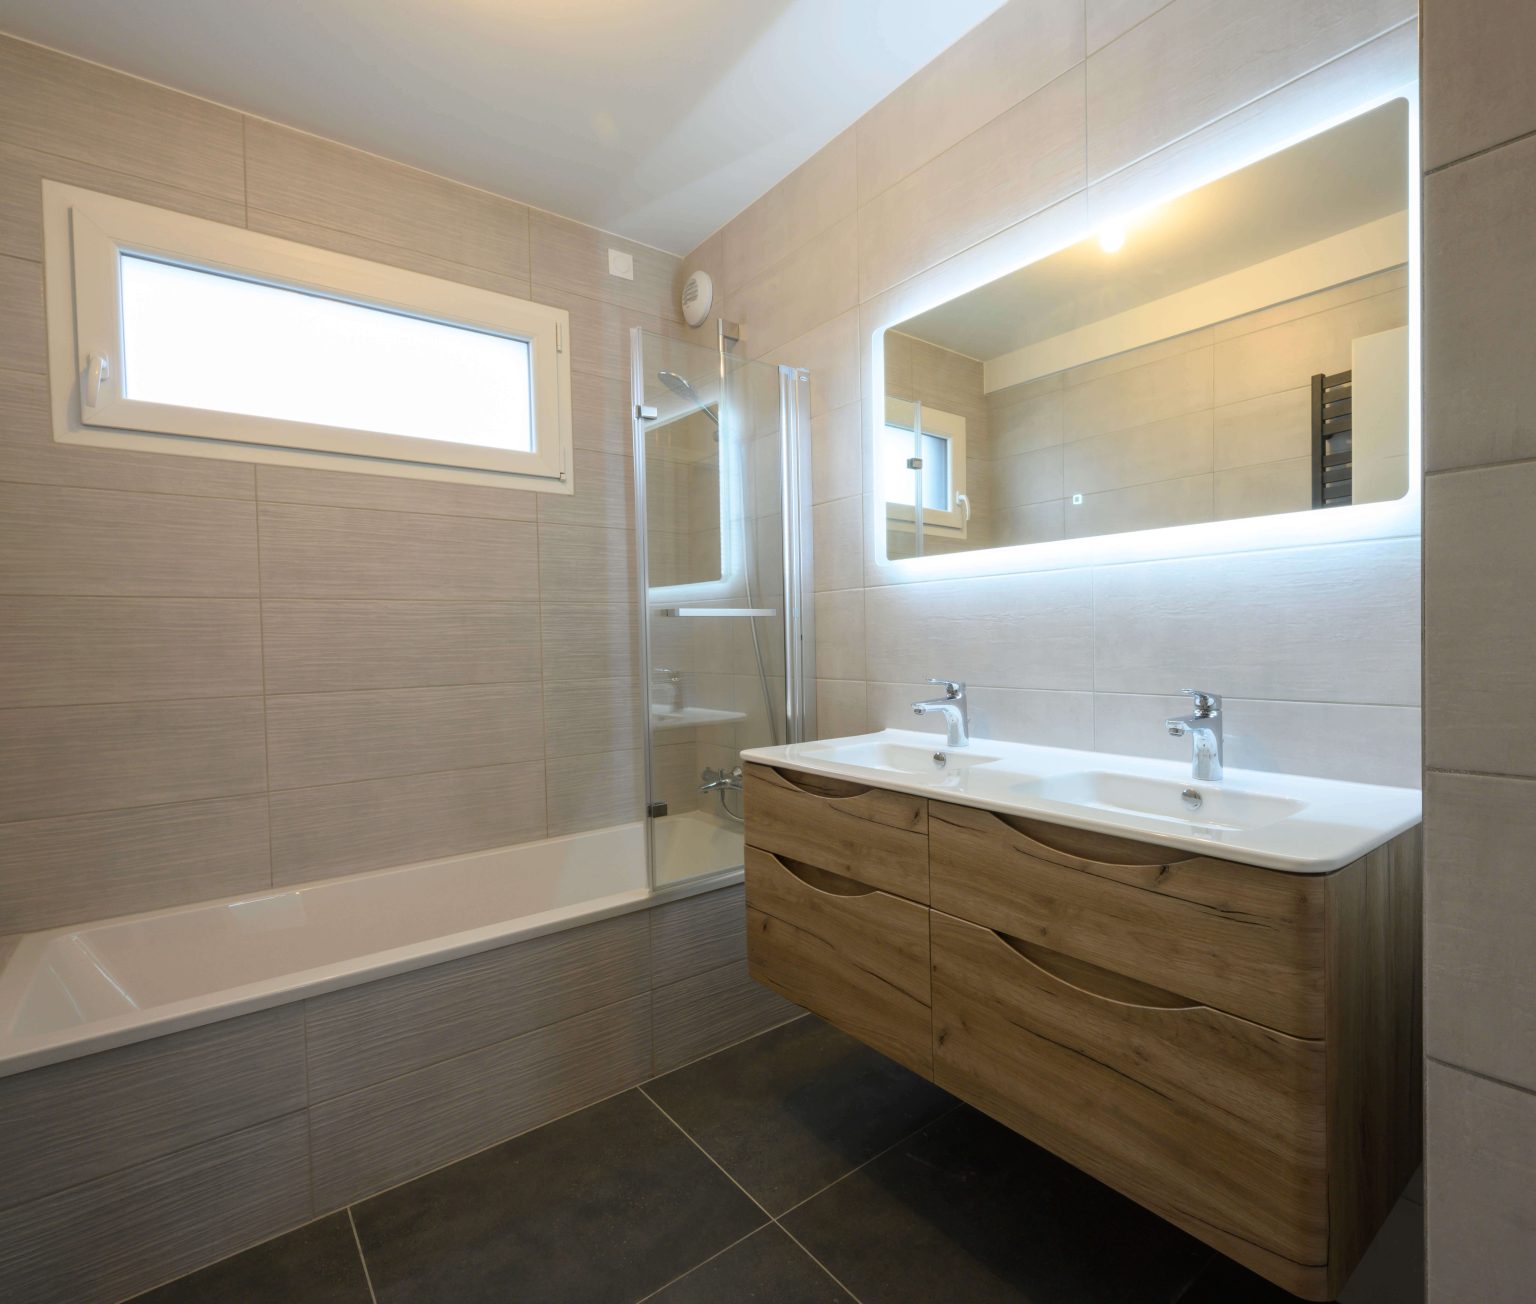 Grande salle de bain lumineuse avec doubles vasques, baignoire et miroir lumineux